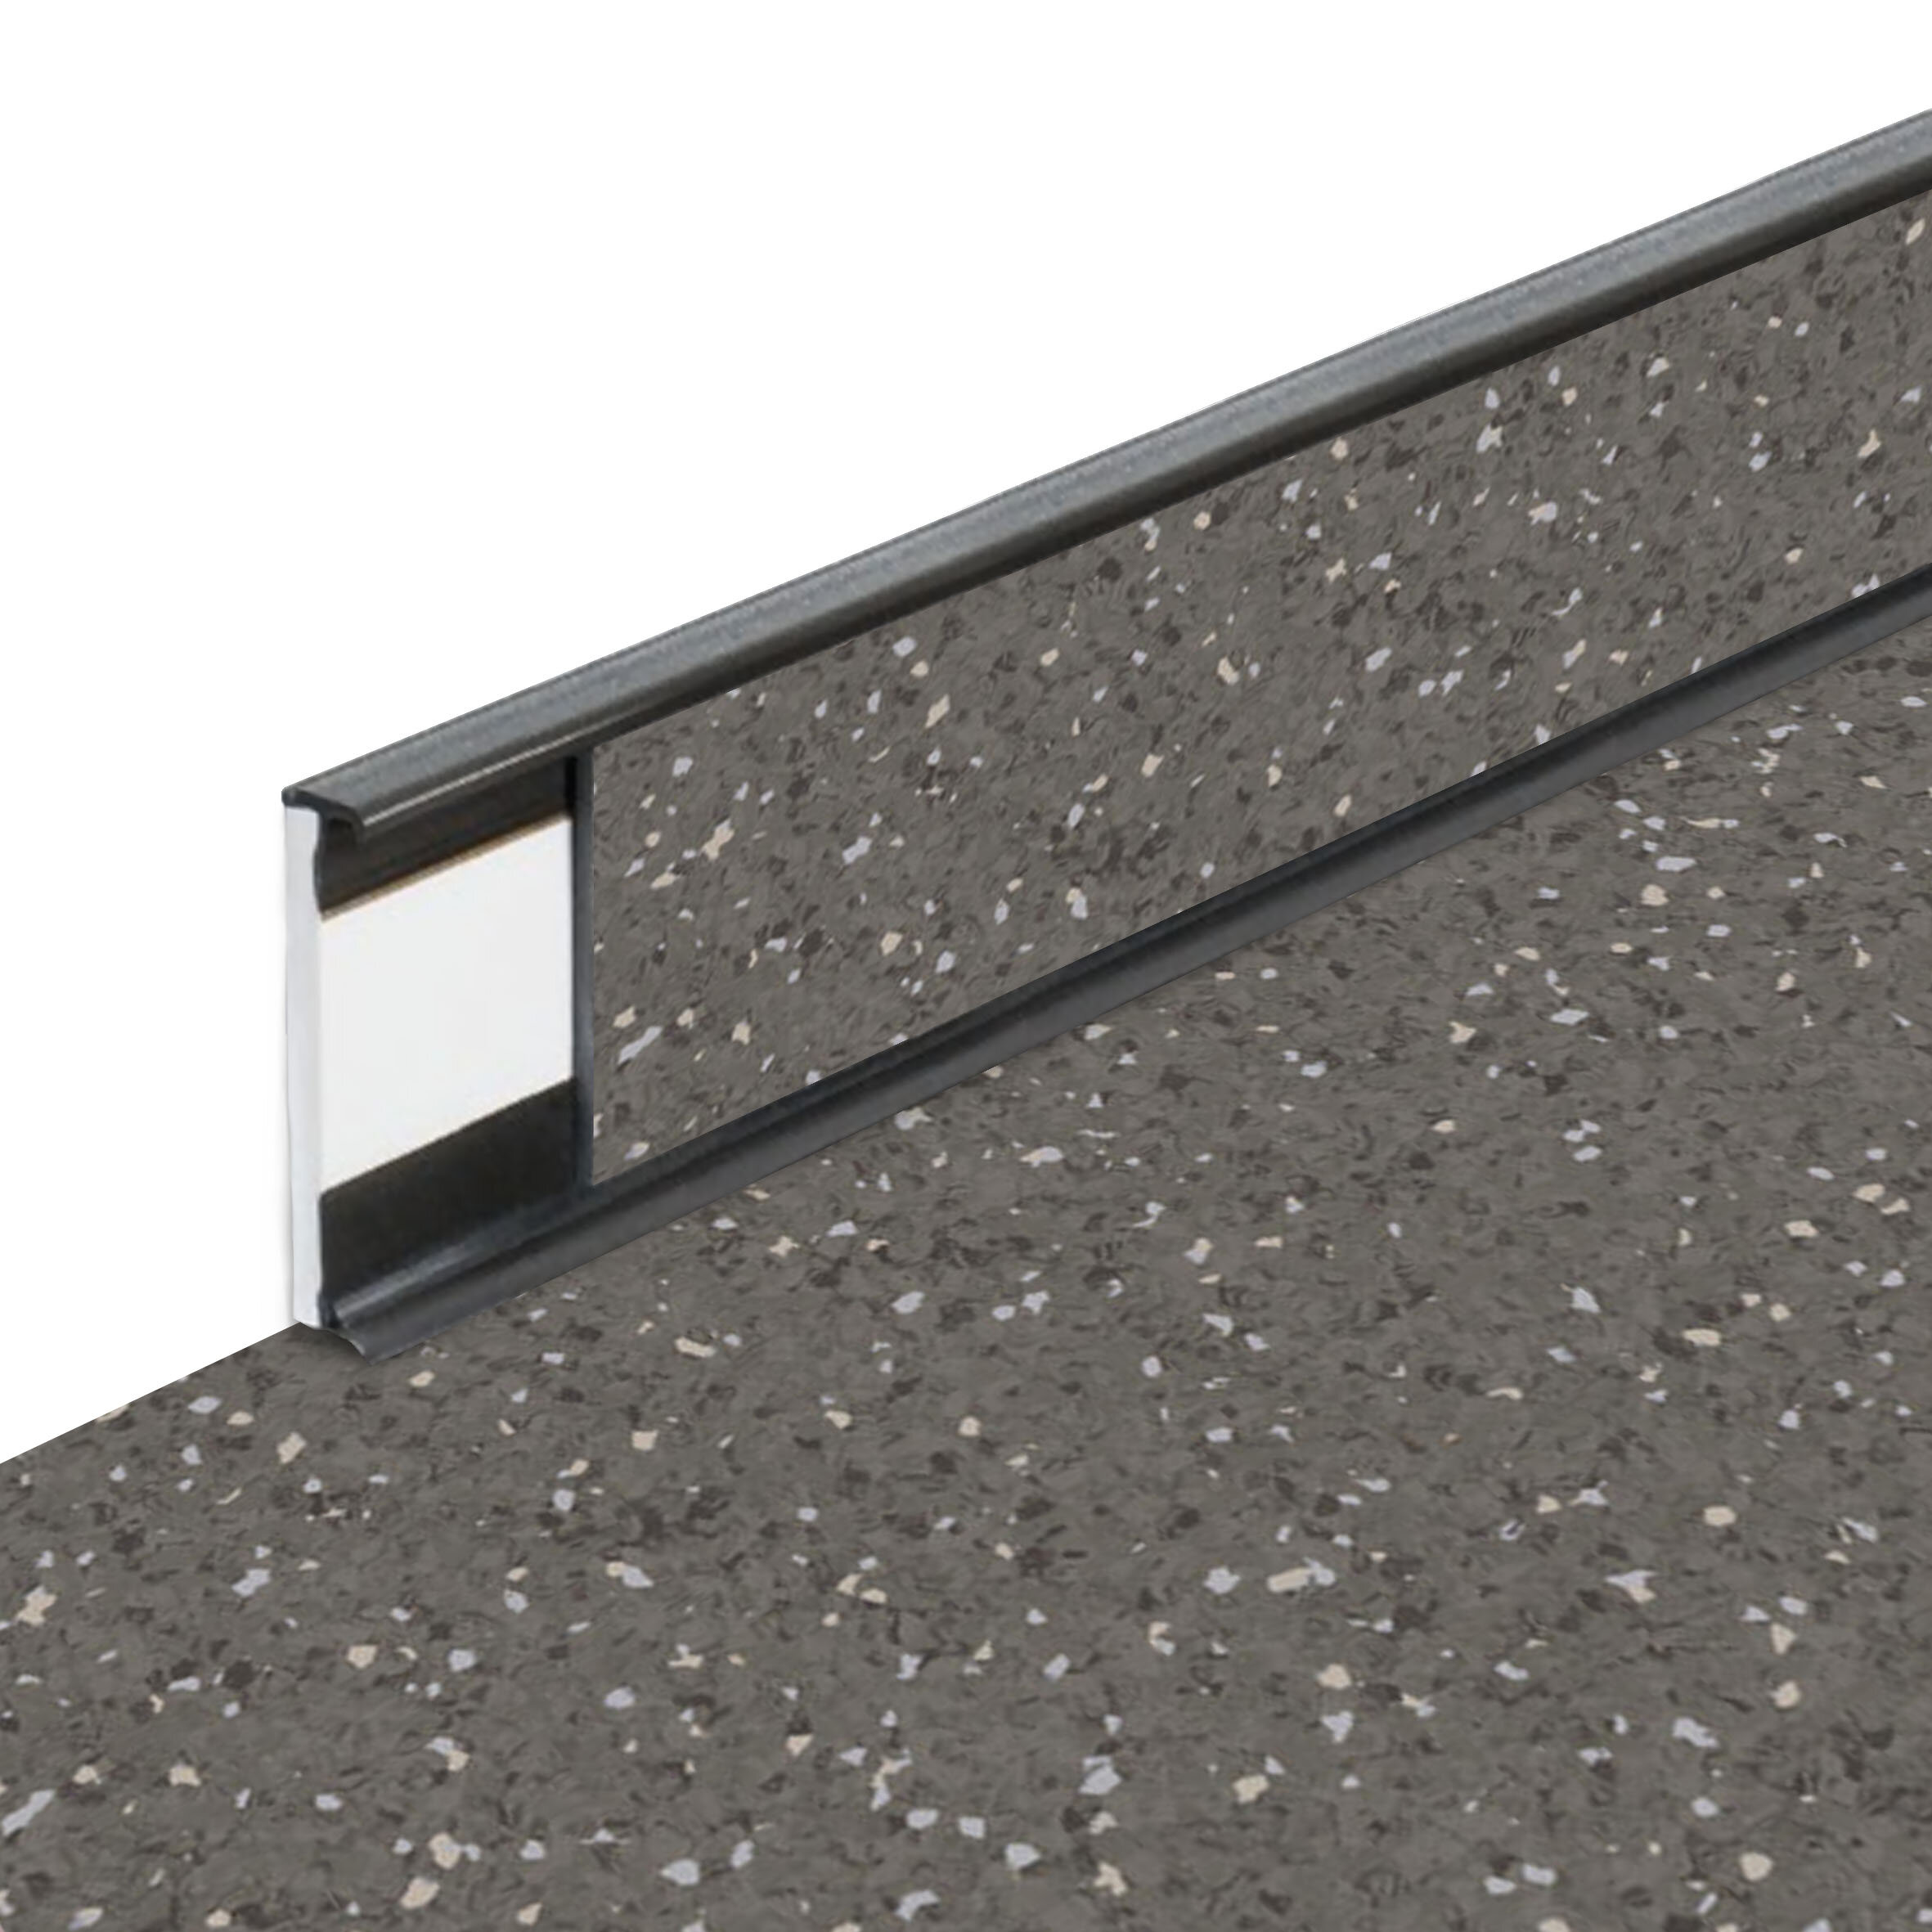 PVC vinylová soklová podlahová lišta Fortelock Business Sauda cold lava G003 graphite - délka 200 cm, výška 5,8 cm, tloušťka 1,2 cm